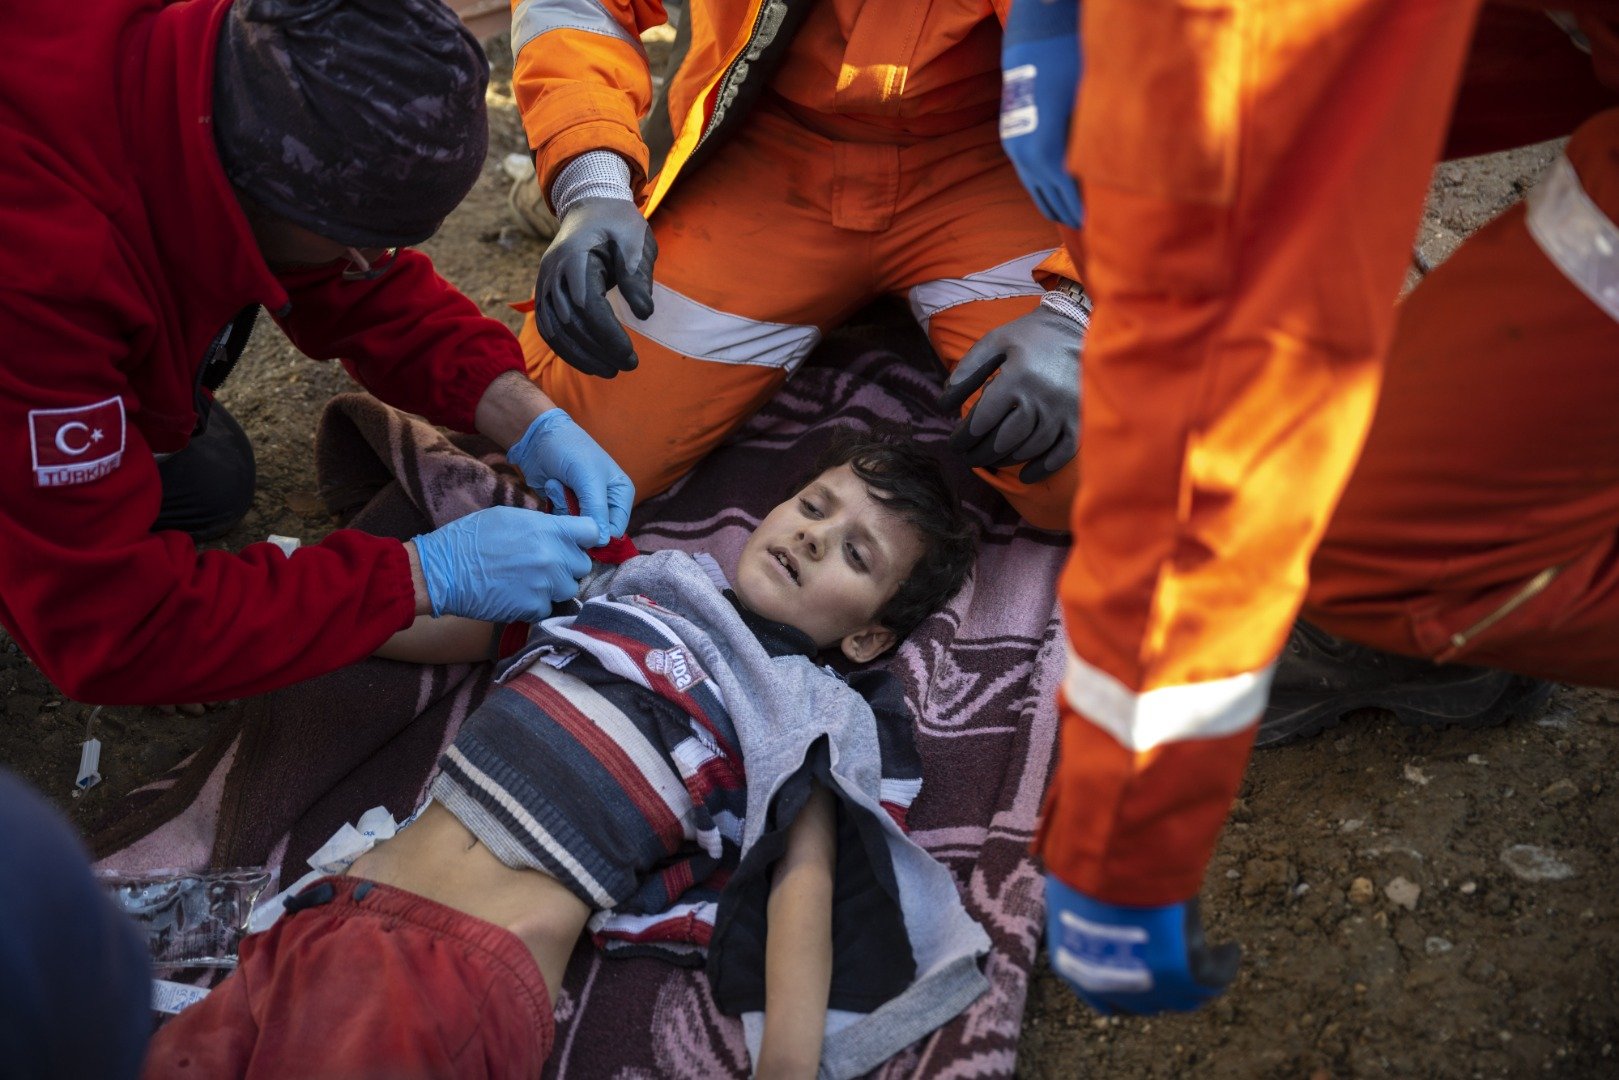 Depremzede vatandaş: Çocuklara sakinleşsinler diye ilaç veriyoruz 17